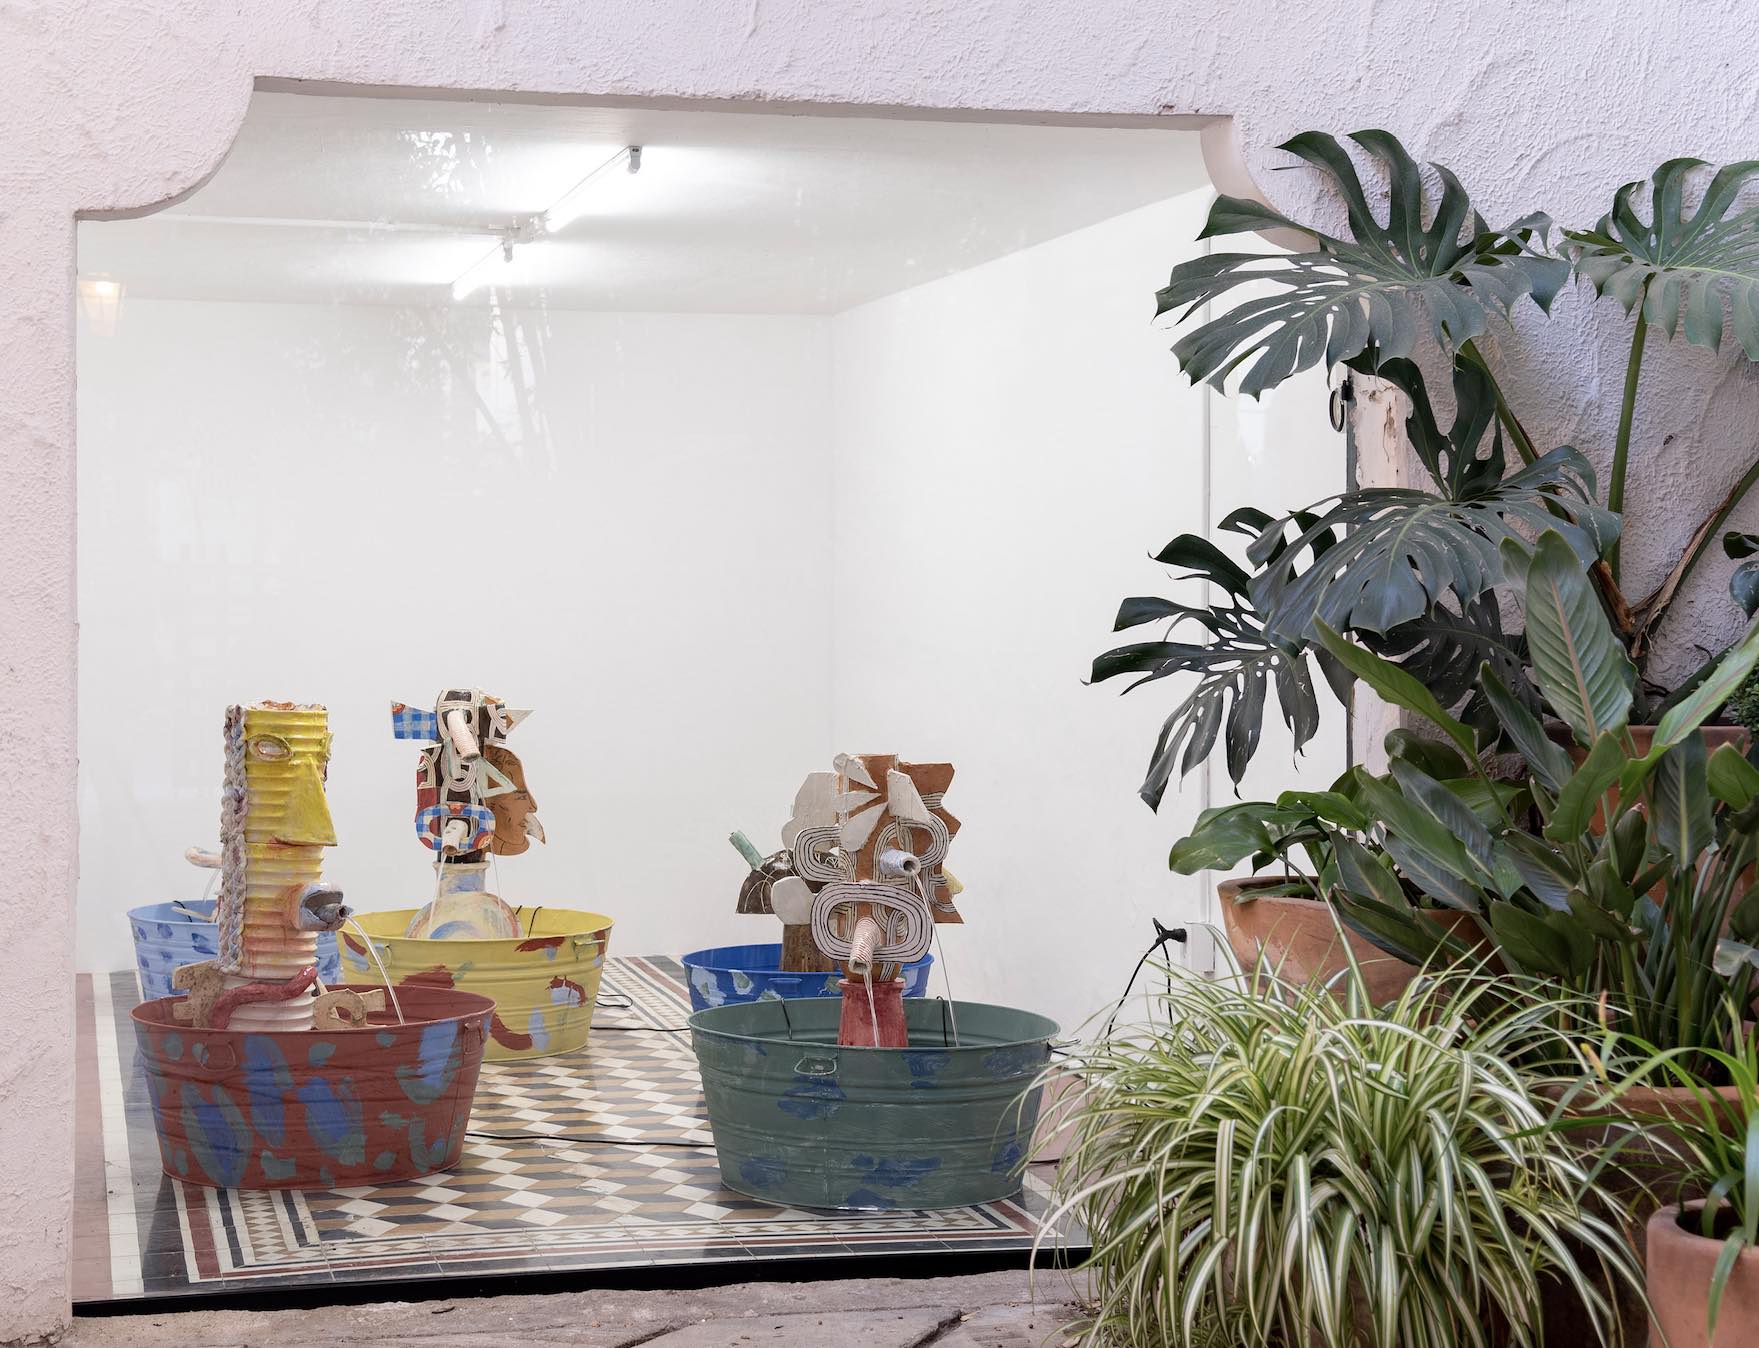 Vista de sala, Frequent Visitors, Milena Muzquiz, Travesía Cuatro, Guadalajara, 2022. Cortesía de la artista y Travesía Cuatro. Foto: Agustín Arce